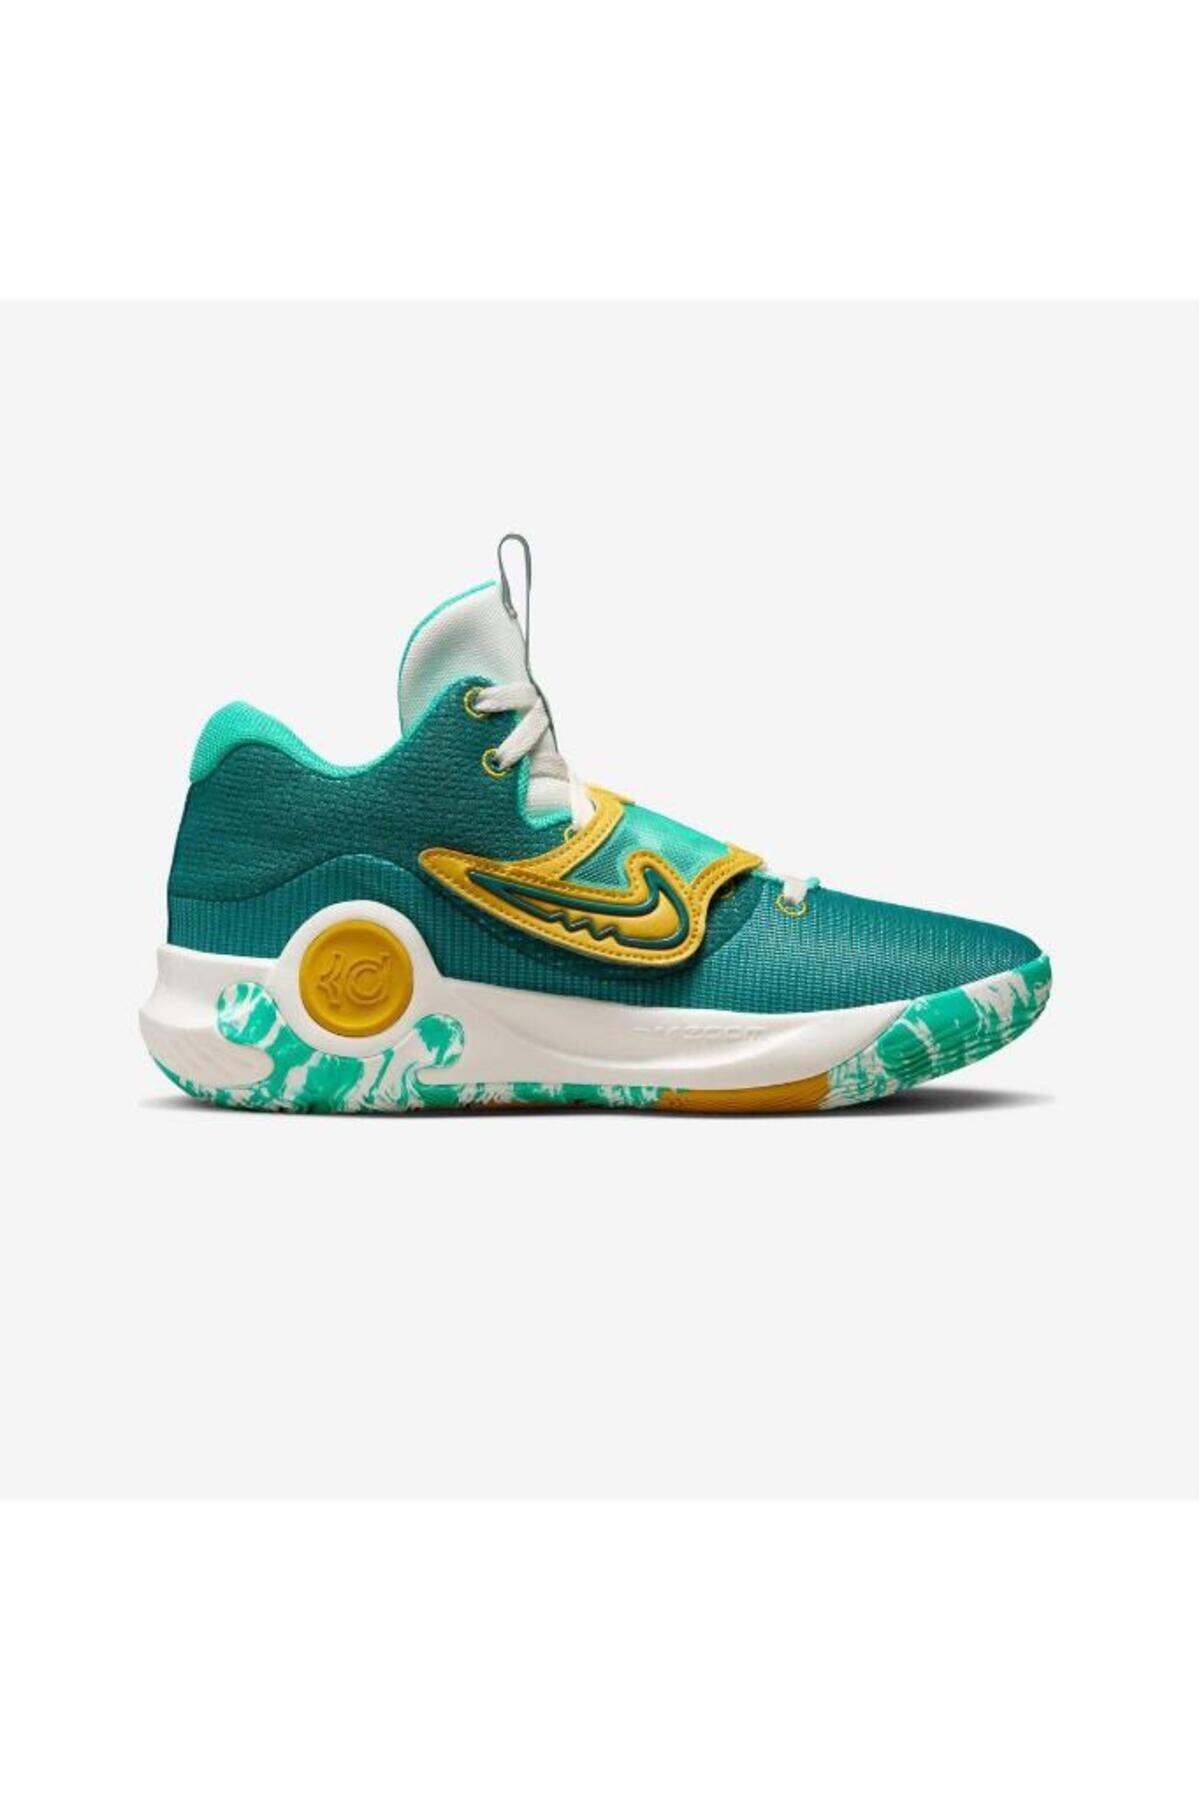 Nike Kevin Durant Kd Trey 5 X Erkek Yeşil Basketbol Ayakkabısı DD9538-300